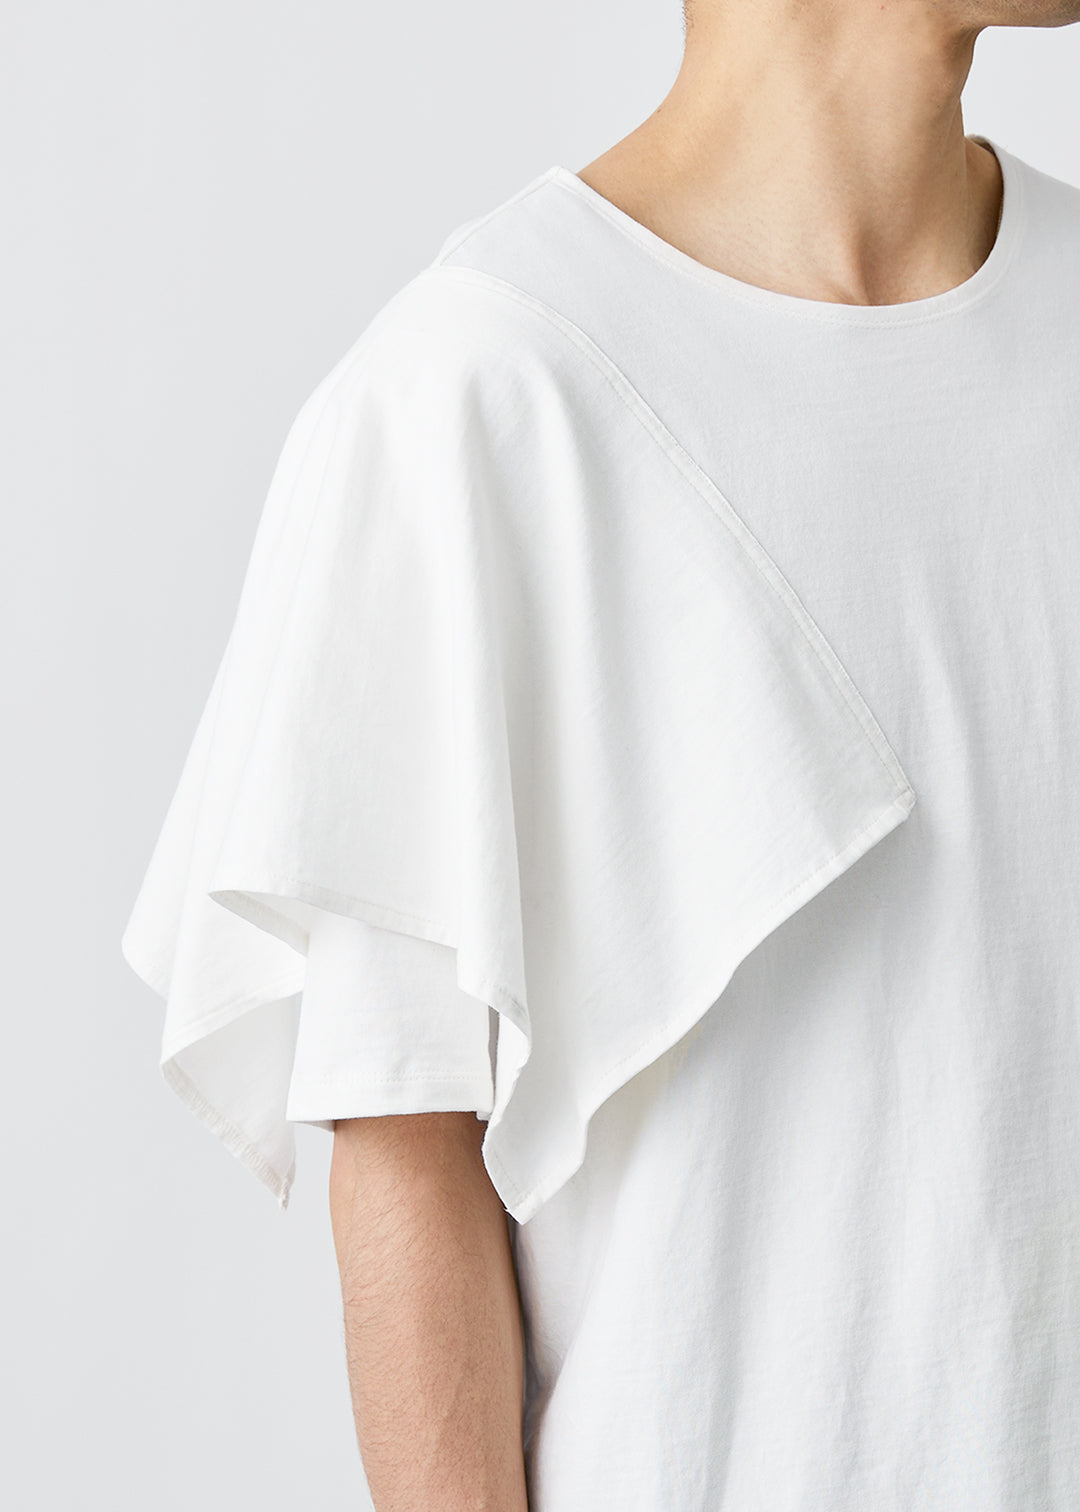 Yuragi Scarf T-shirt Organic Cotton